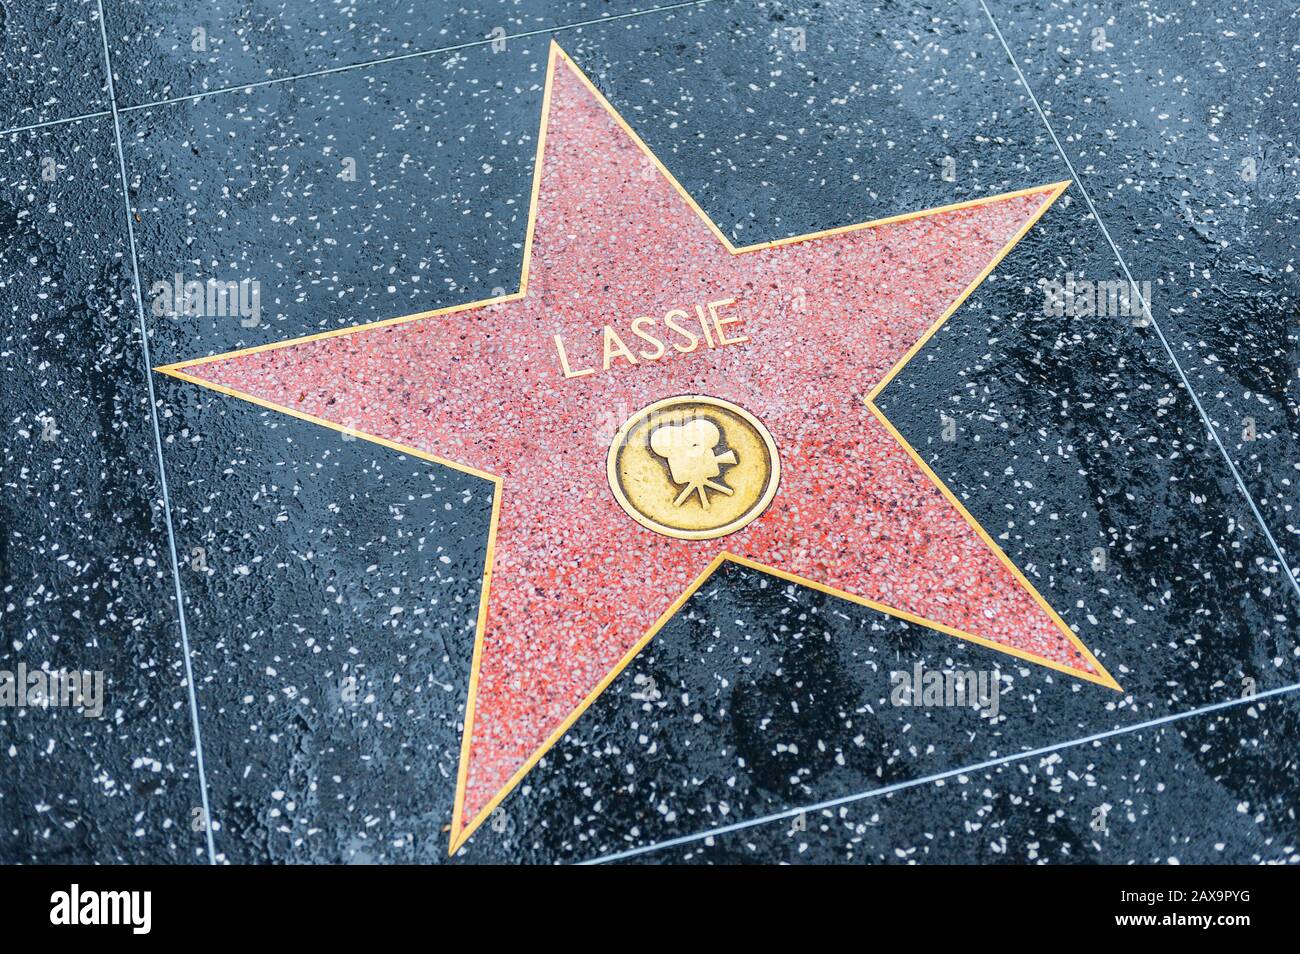 Lassie Star auf dem Hollywood Walk of Fame in Hollywood, Kalifornien, USA. Lassie war ein fiktiver weiblicher rauer Collie-Hund. Stockfoto